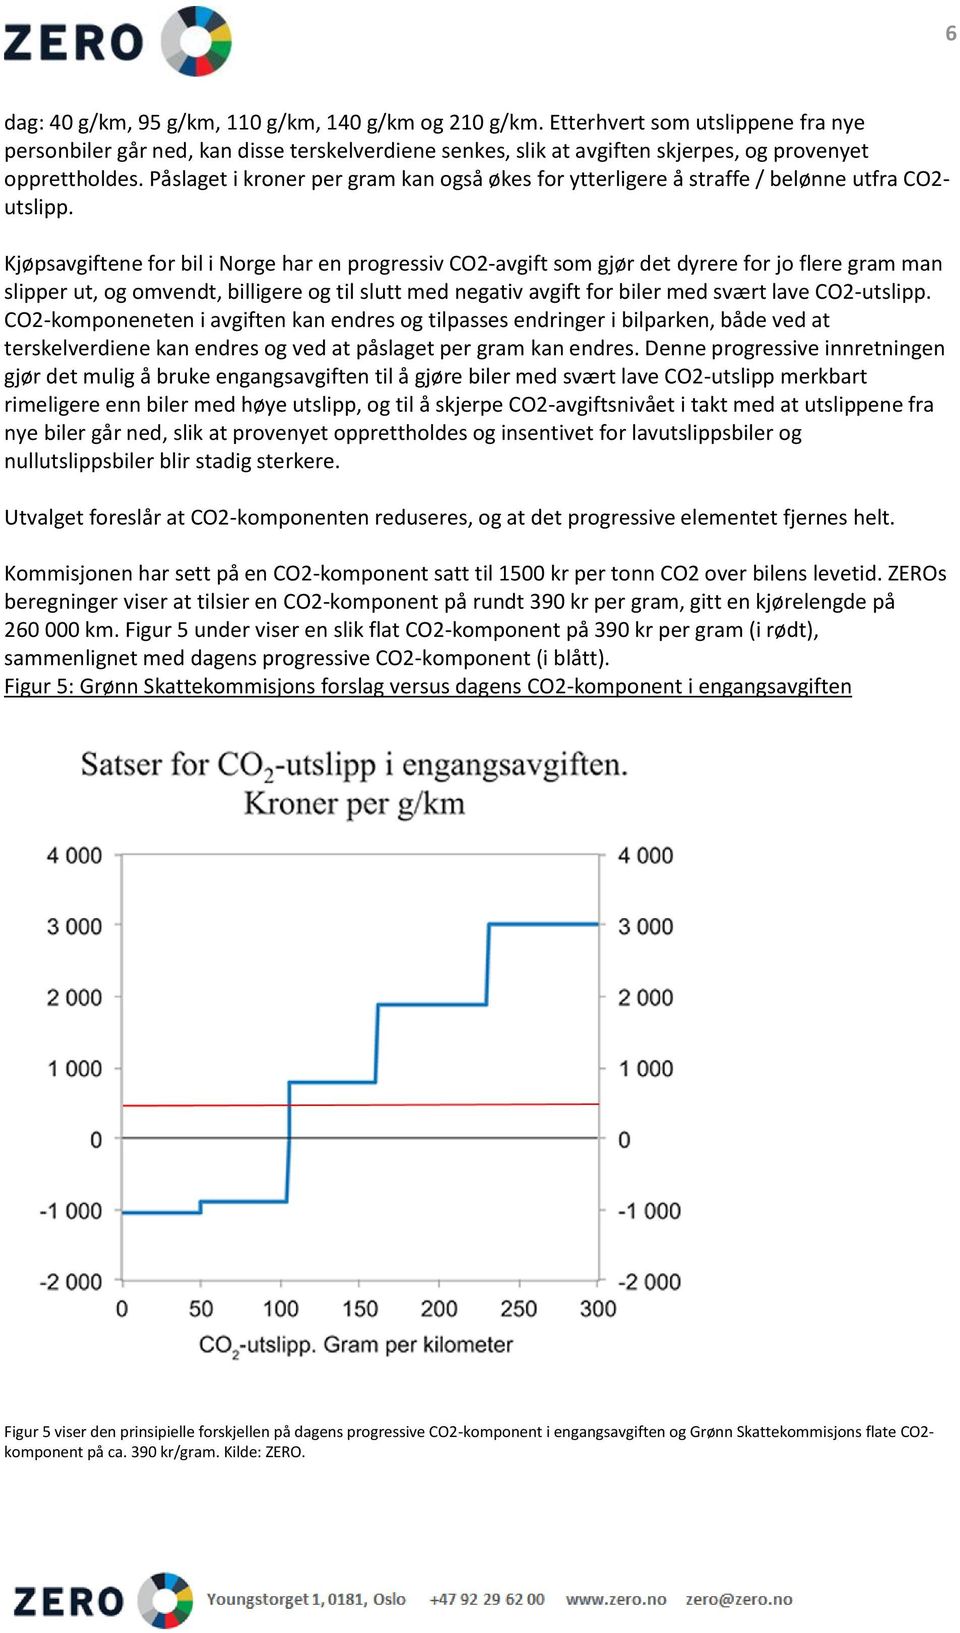 Kjøpsavgiftene for bil i Norge har en progressiv CO2-avgift som gjør det dyrere for jo flere gram man slipper ut, og omvendt, billigere og til slutt med negativ avgift for biler med svært lave